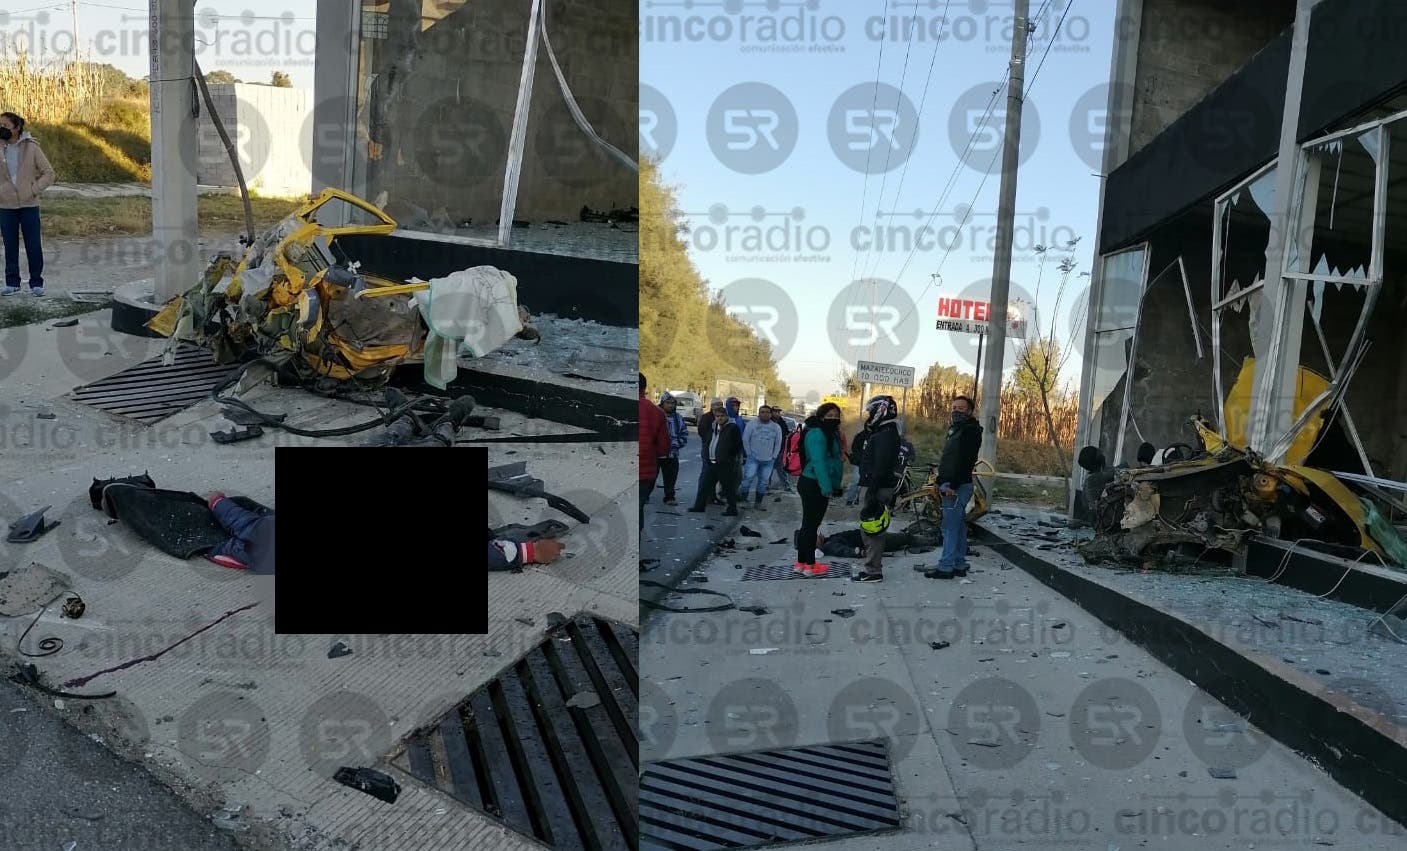 #AlMinuto Conductor pierde el control y choca contra locales de la Plaza Baboleta